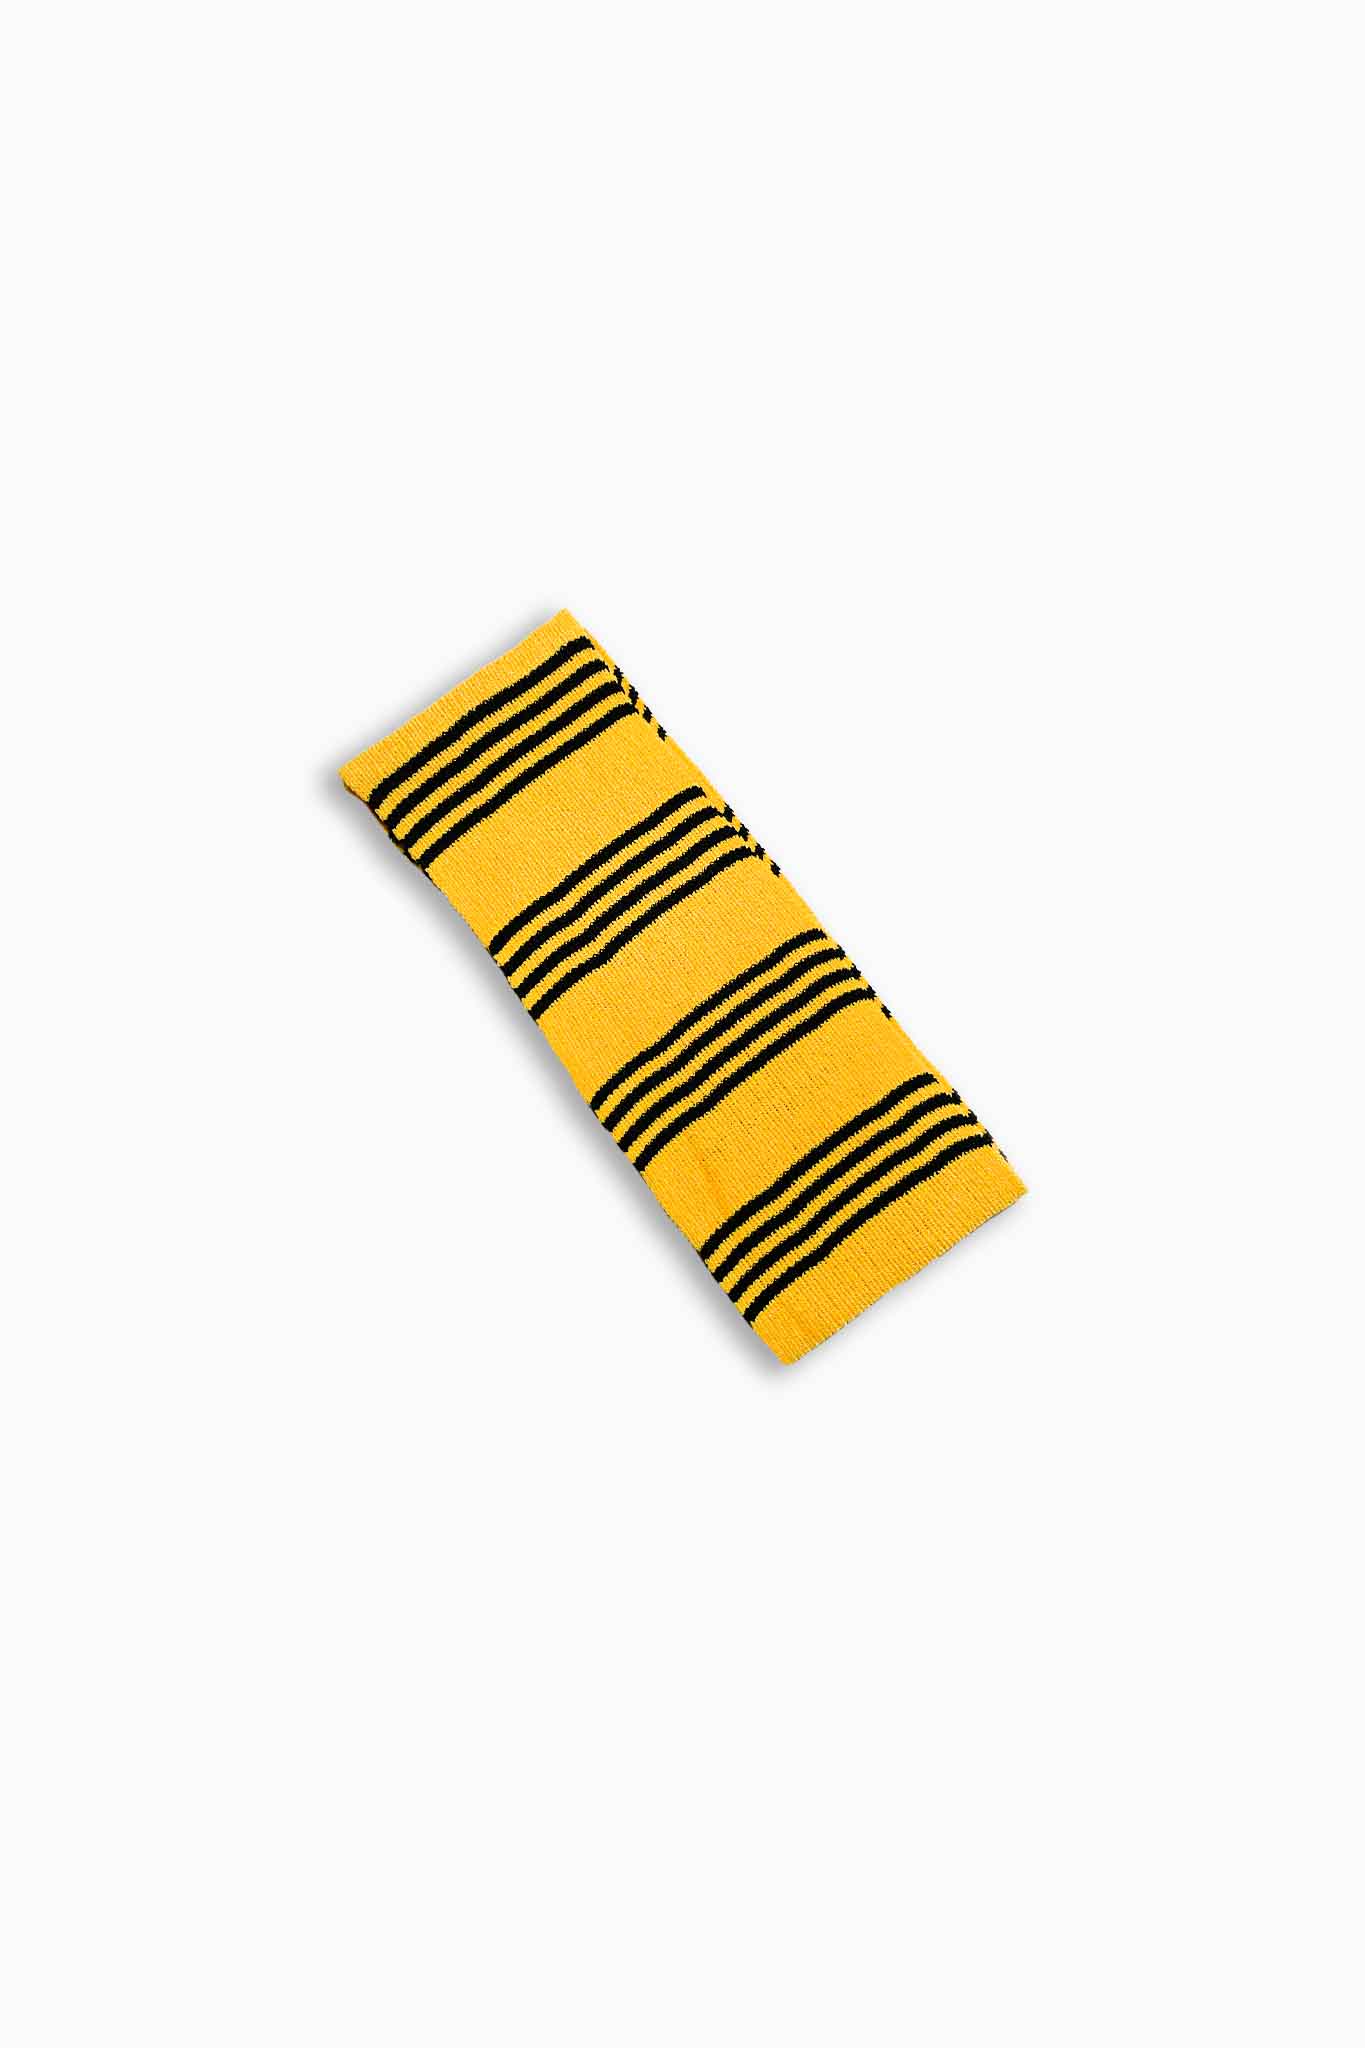 Ilana Blumberg X Good Squish Bestie Headband: Yellow/Black